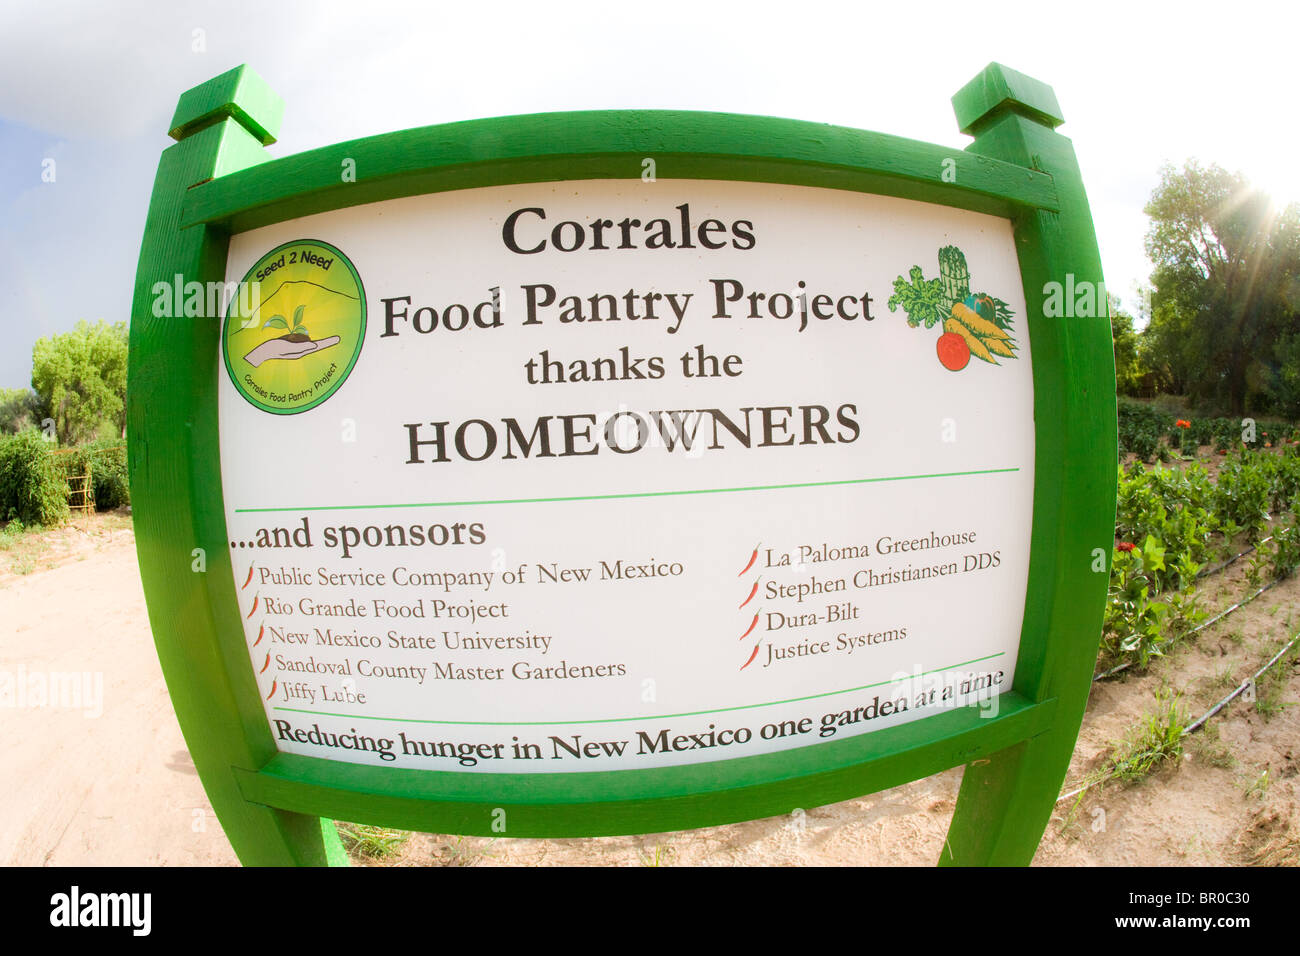 Zeichen vor Corrales Bauernhof Lebensmittel Speisekammer Projekt Spende an Essen bank home Produkte pflanzlichen Spende freiwillig Stockfoto